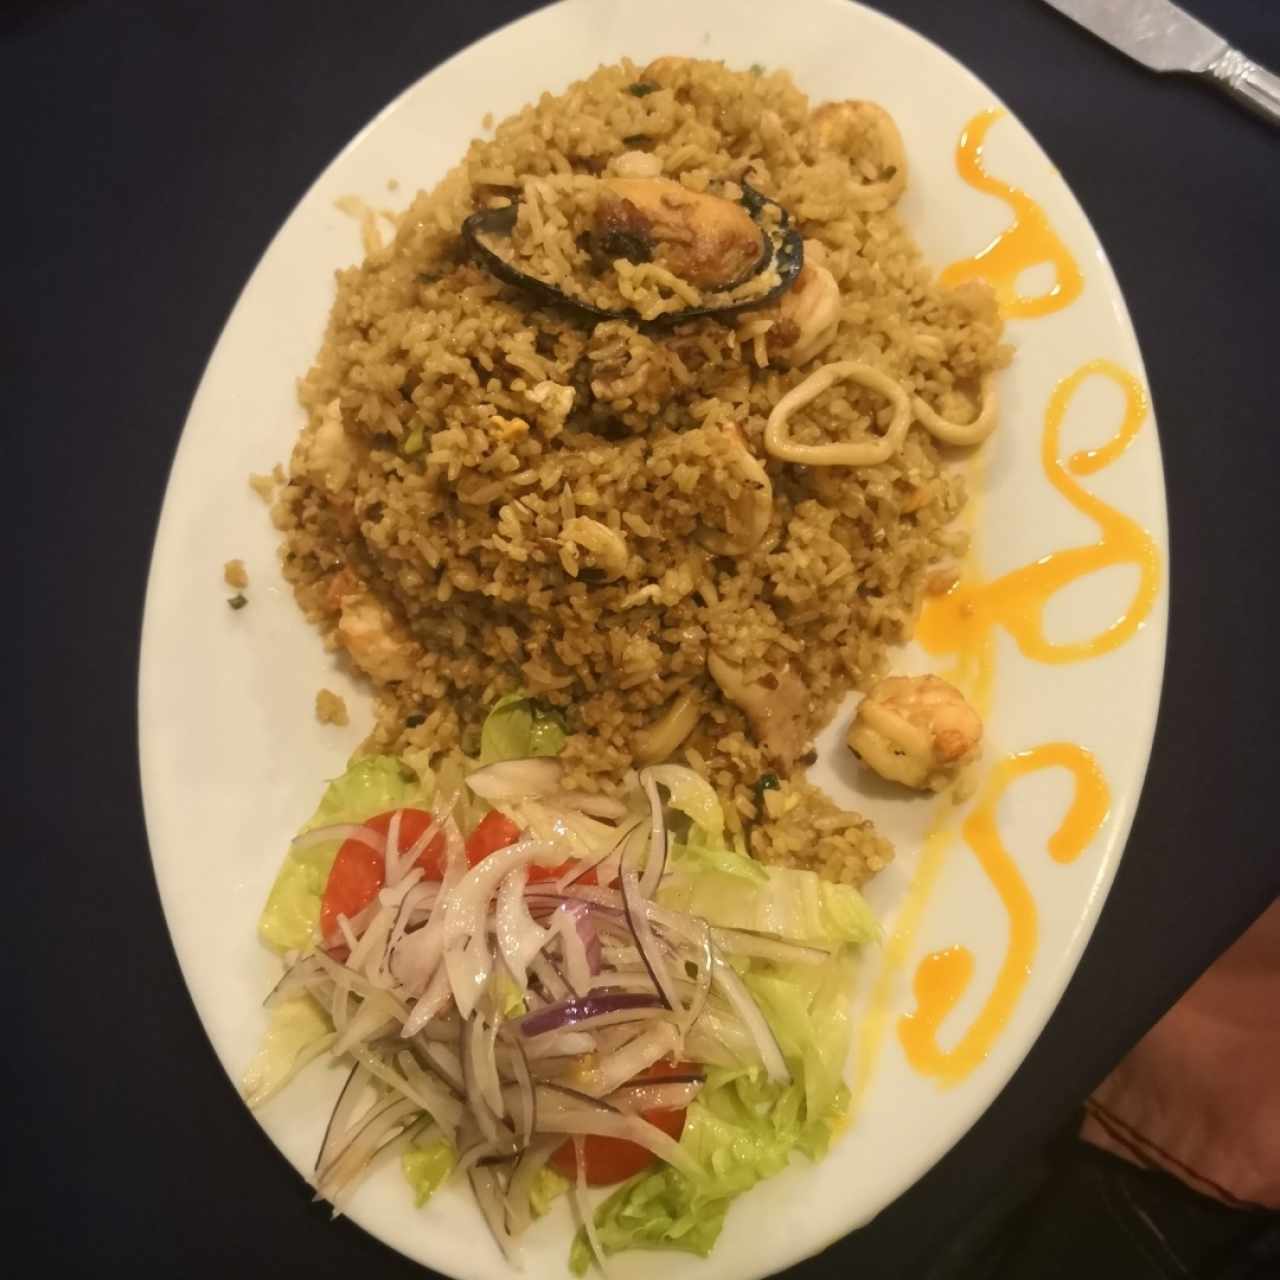 arroz Chaufa